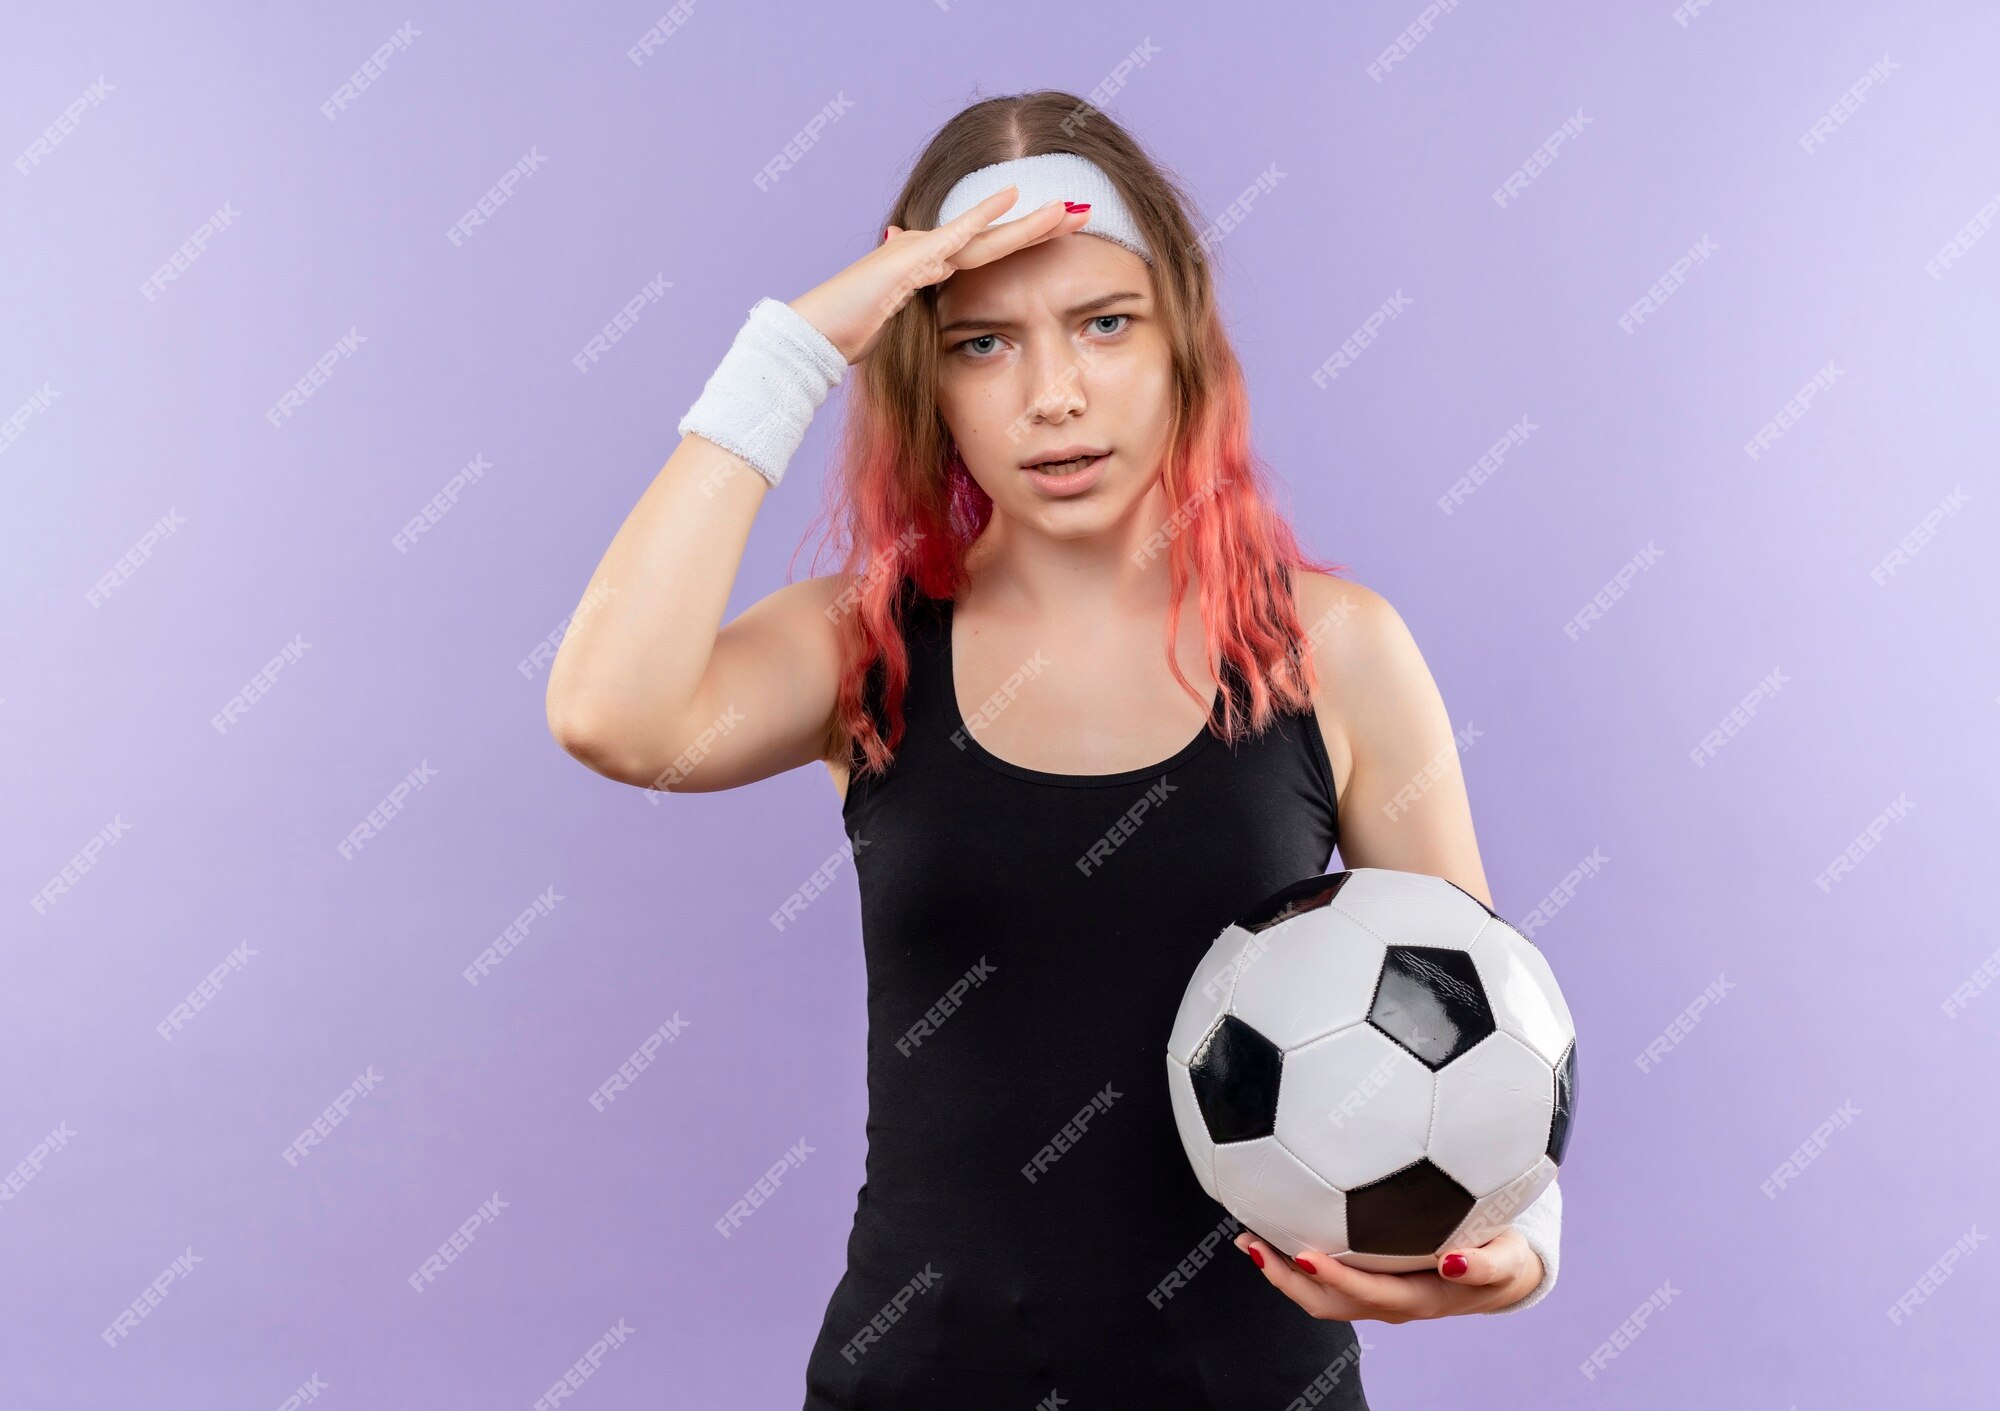 Mujer joven fitness en deportiva sosteniendo un balón de con las manos sobre la cabeza pie sobre la pared púrpura | Foto Gratis